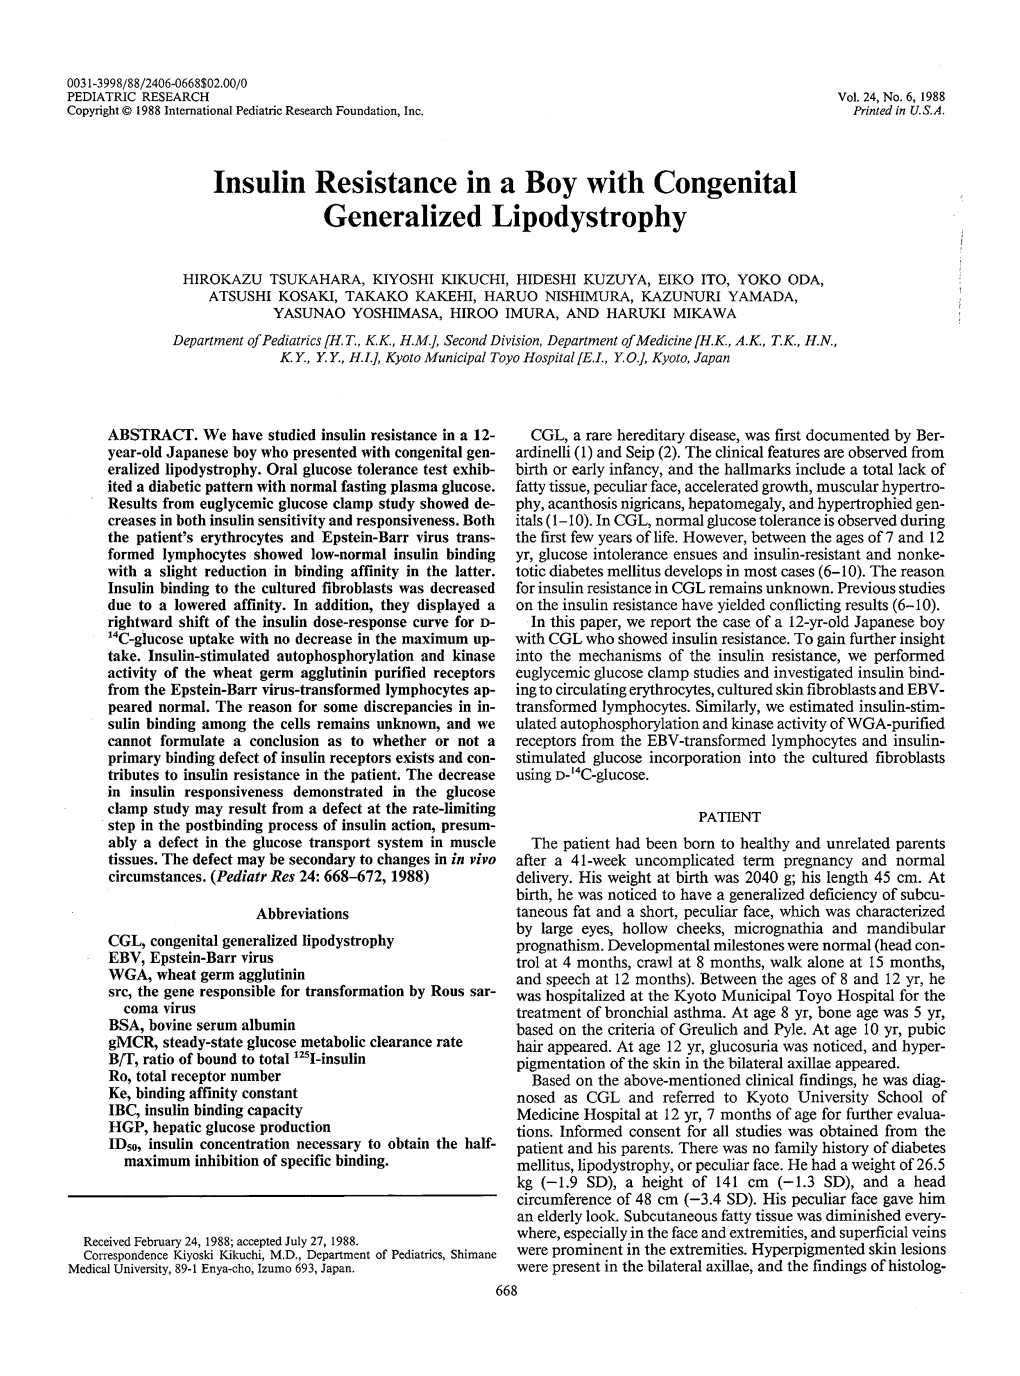 Insulin Resistance in a Boy with Congenital Generalized Lipodystrophy